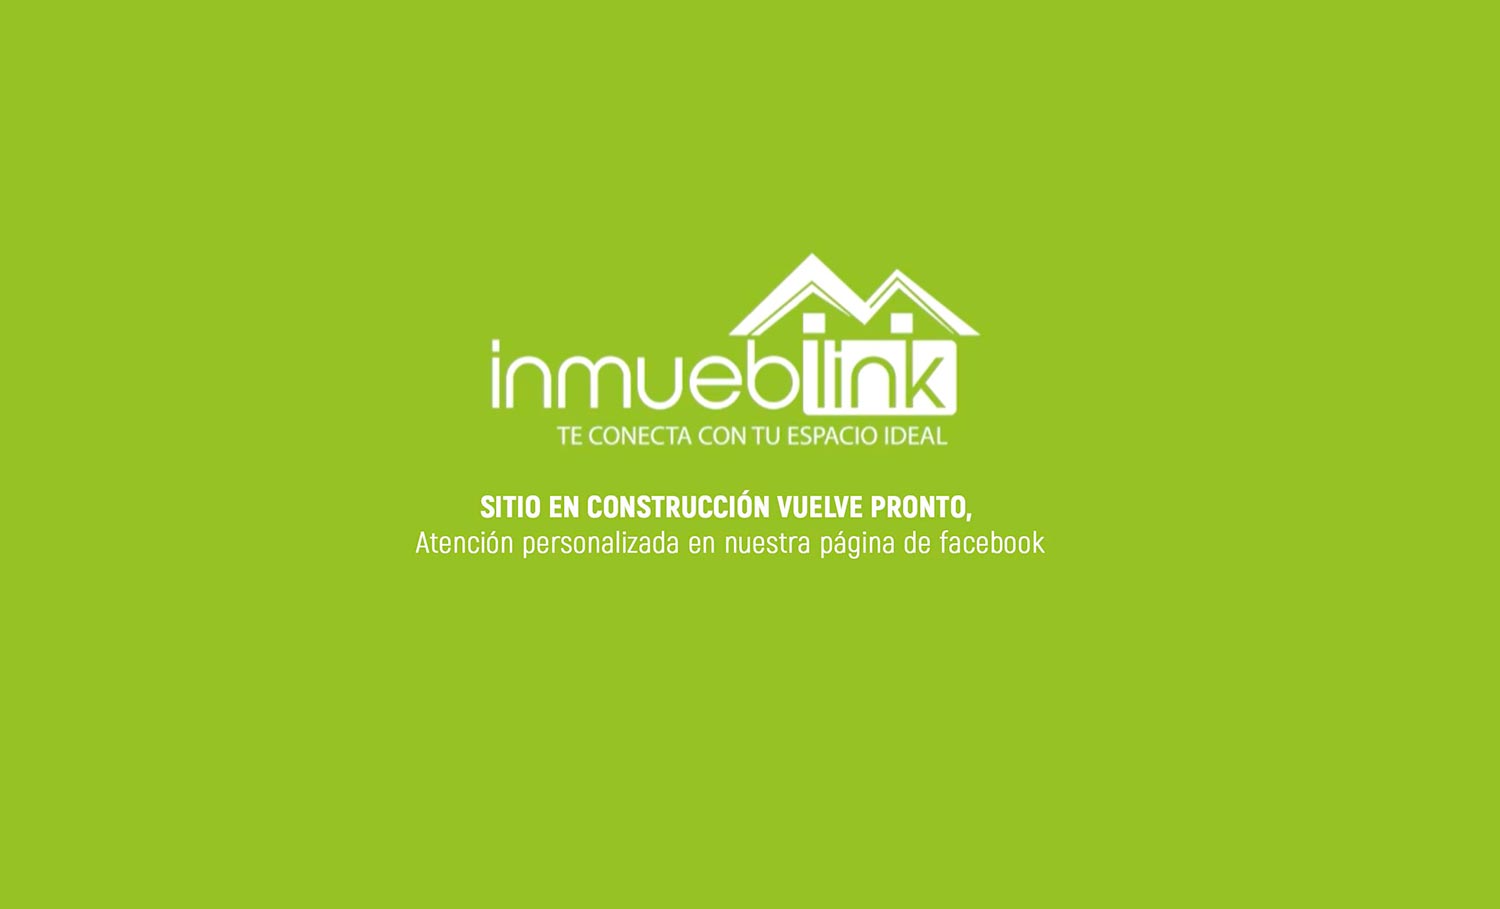 inmueblink empresa de bienes raices en ciudad de mexico